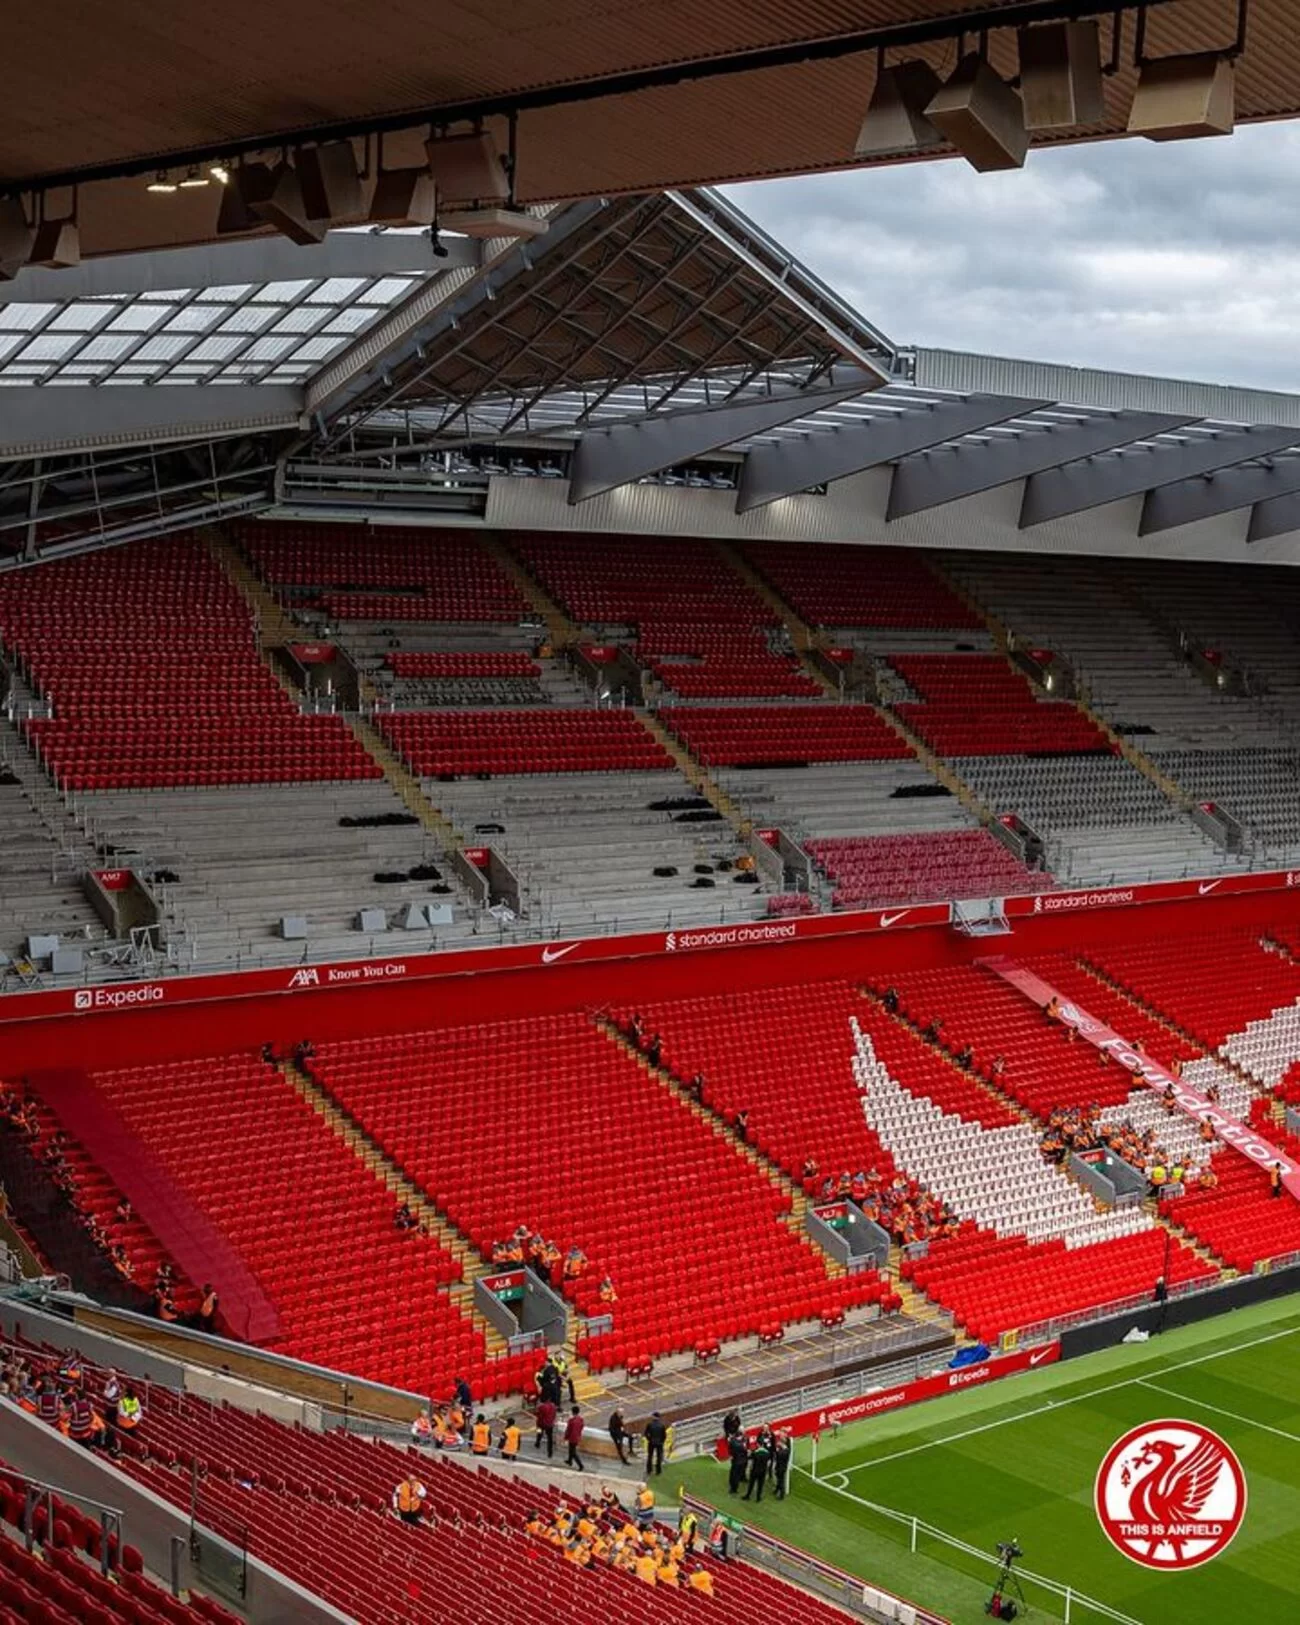 Donos do Liverpool vendem parte do clube por valor bilionário